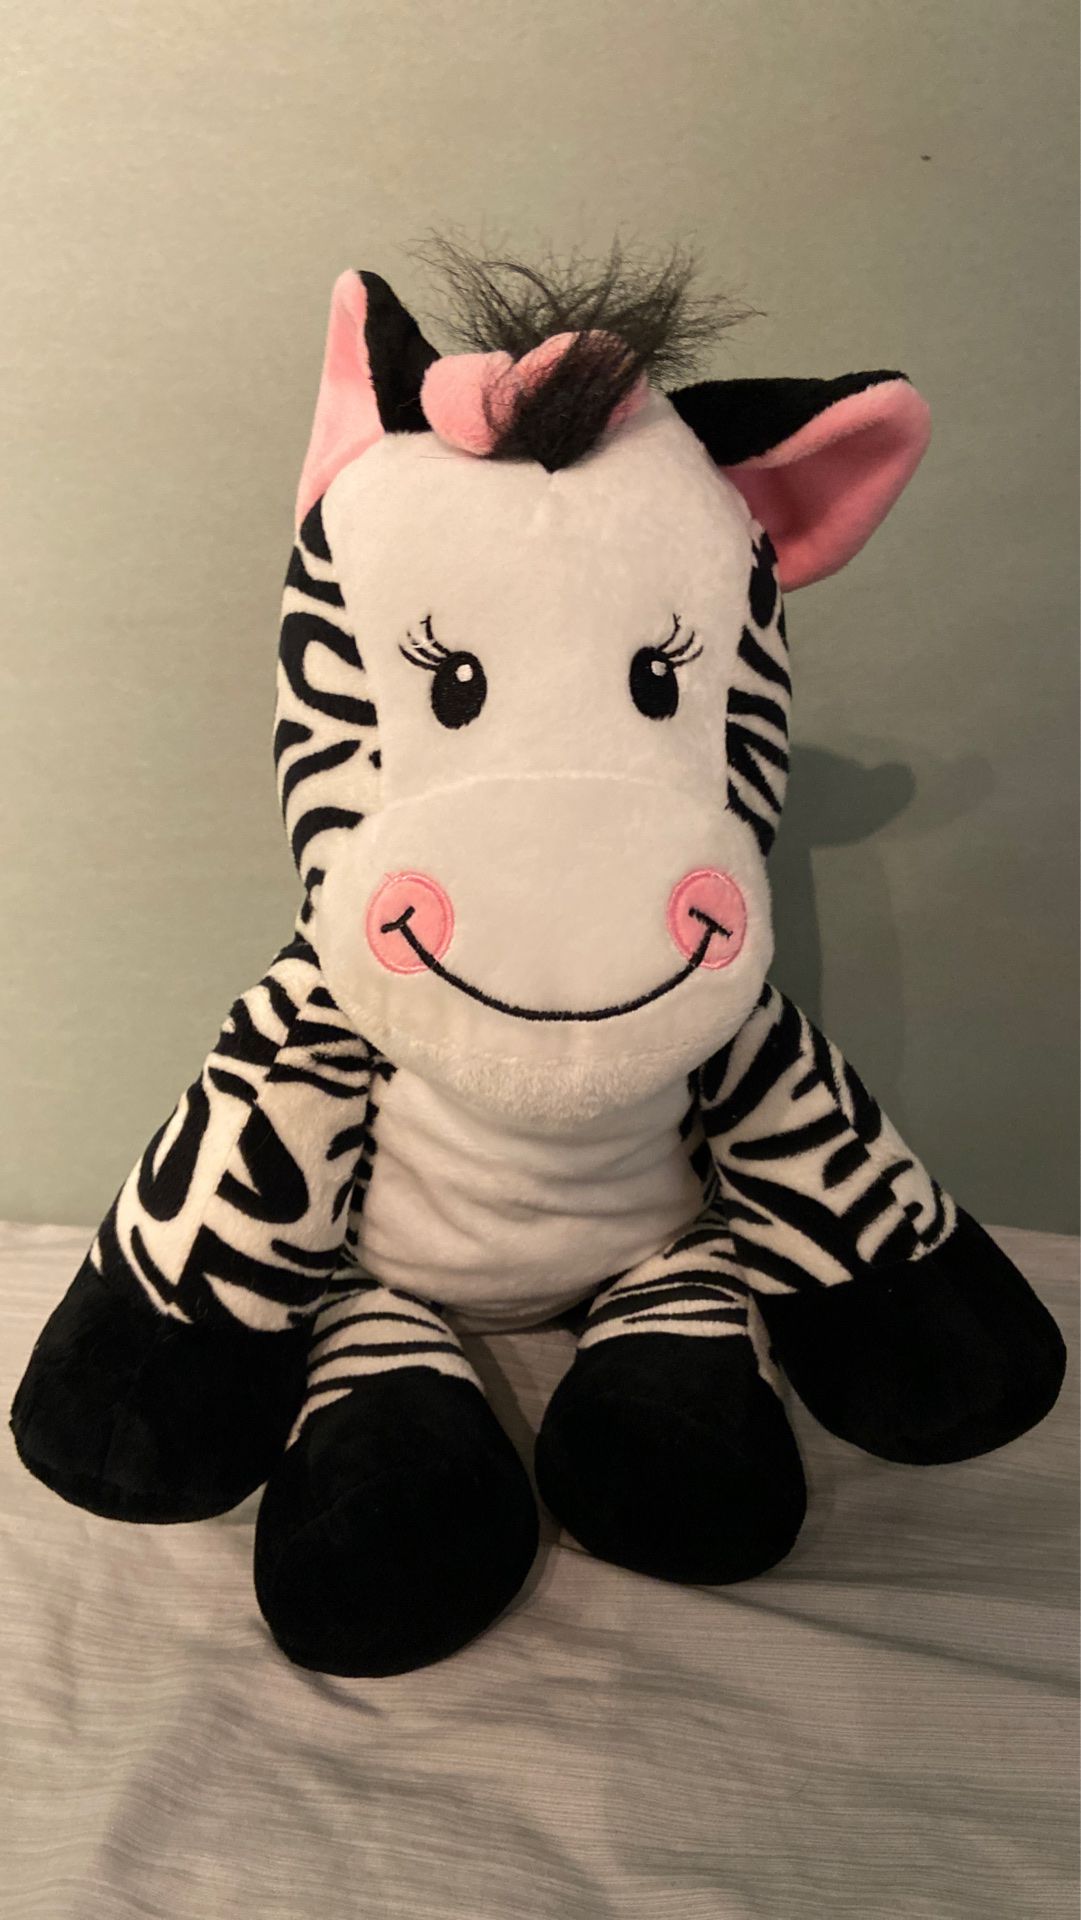 Zebra plushy for $5